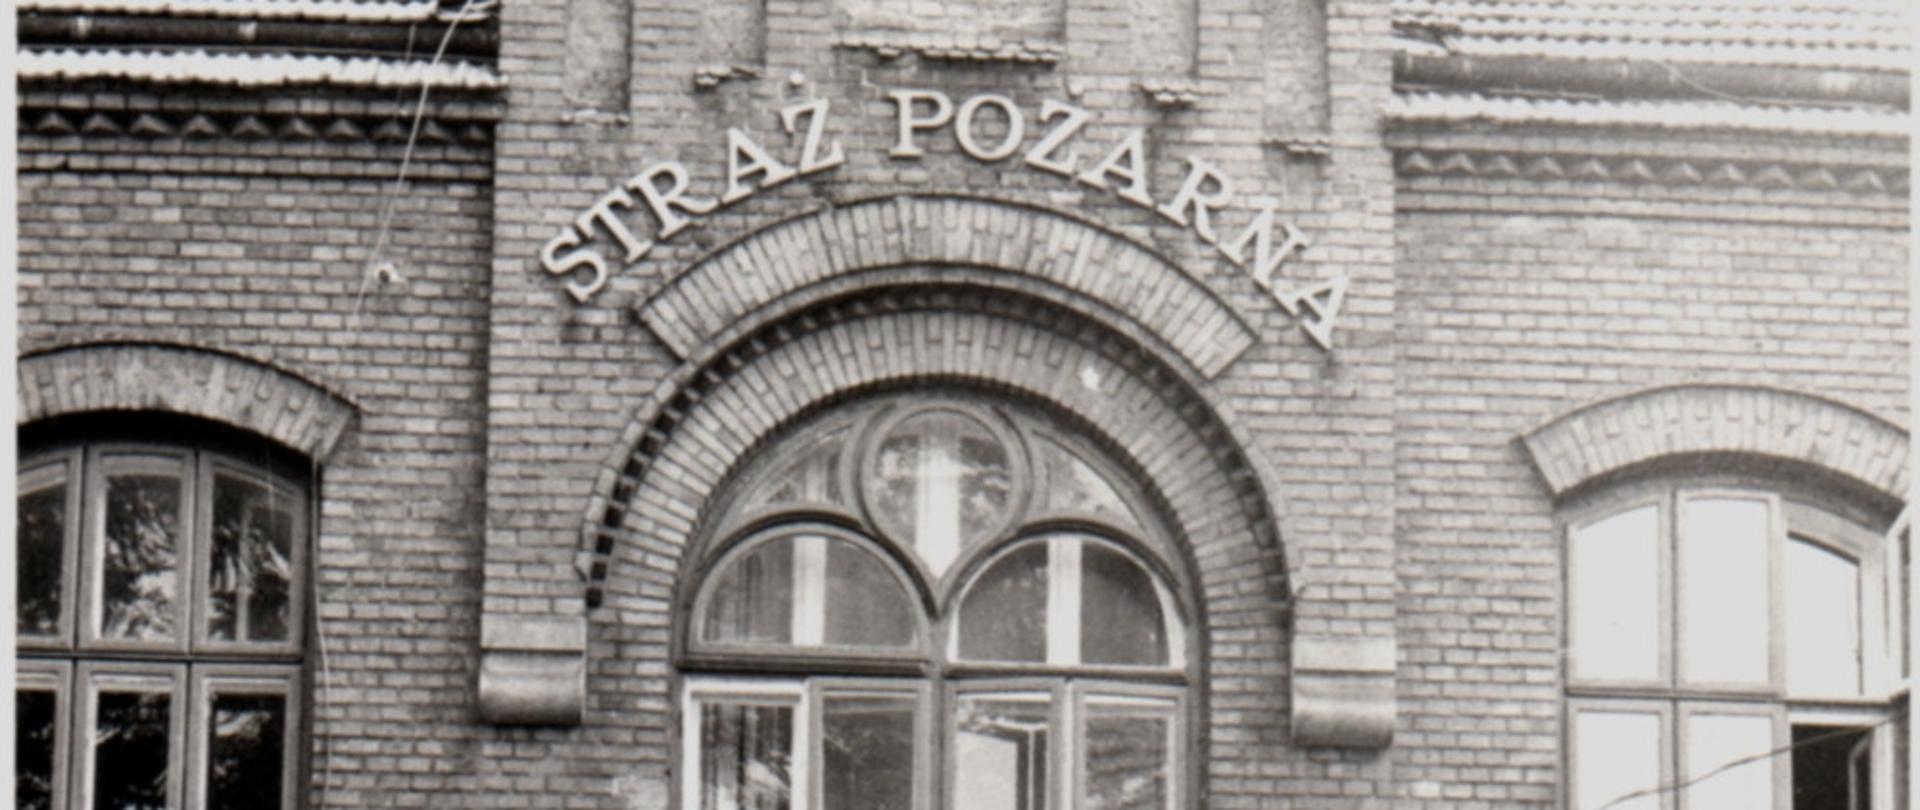 Budynek Straży Pożarnej w Żywcu na ul. Kościuszki. Przed budynkiem ustawione dwa samochody ratowniczo-gaśnicze Jelcz. Zdjęcie czarno - białe.